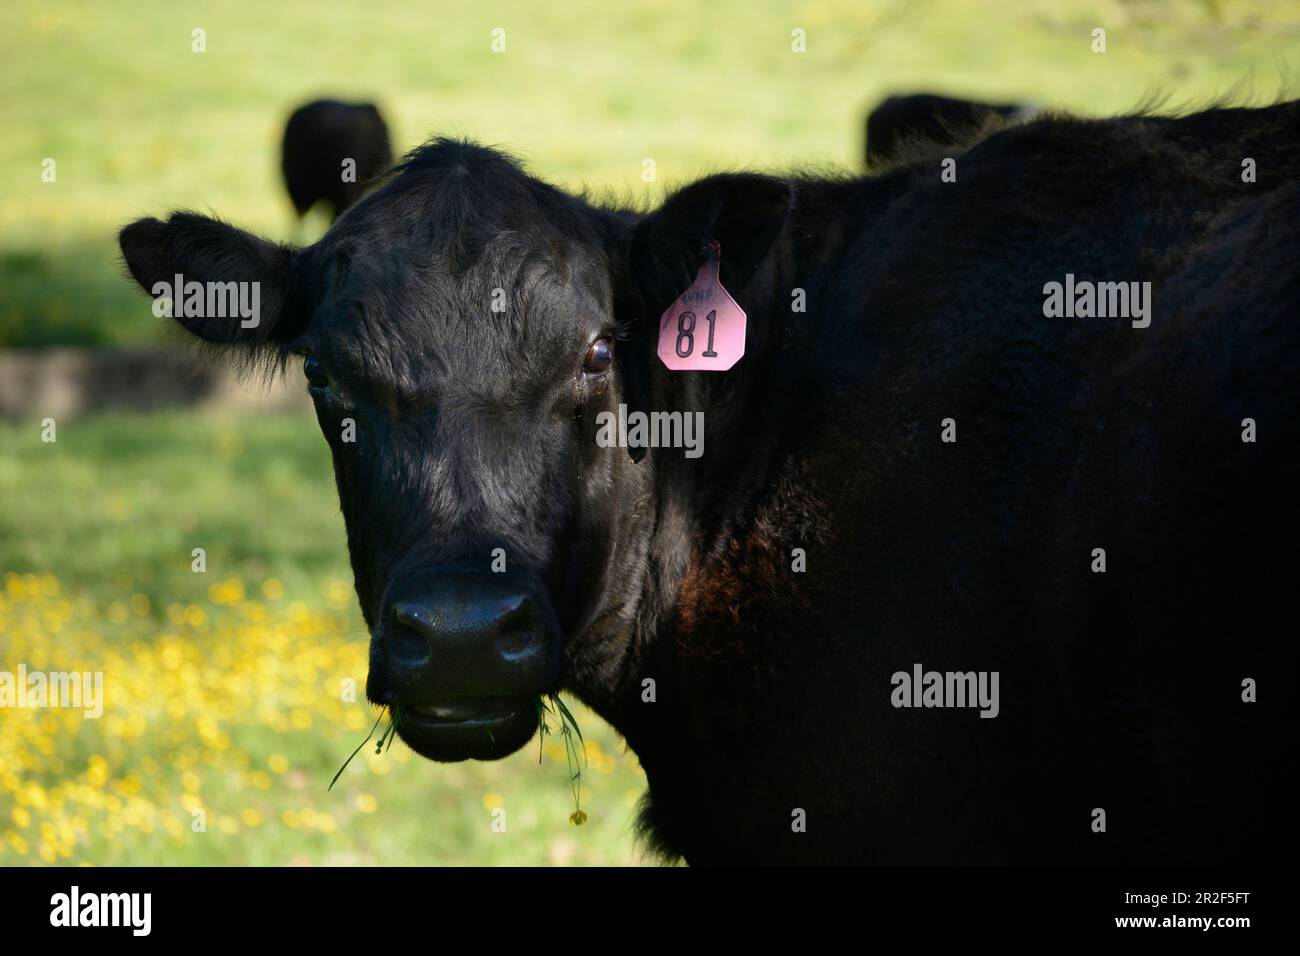 Im Südwesten Virginias, USA, grasen Rinder auf einer Weide Stockfoto